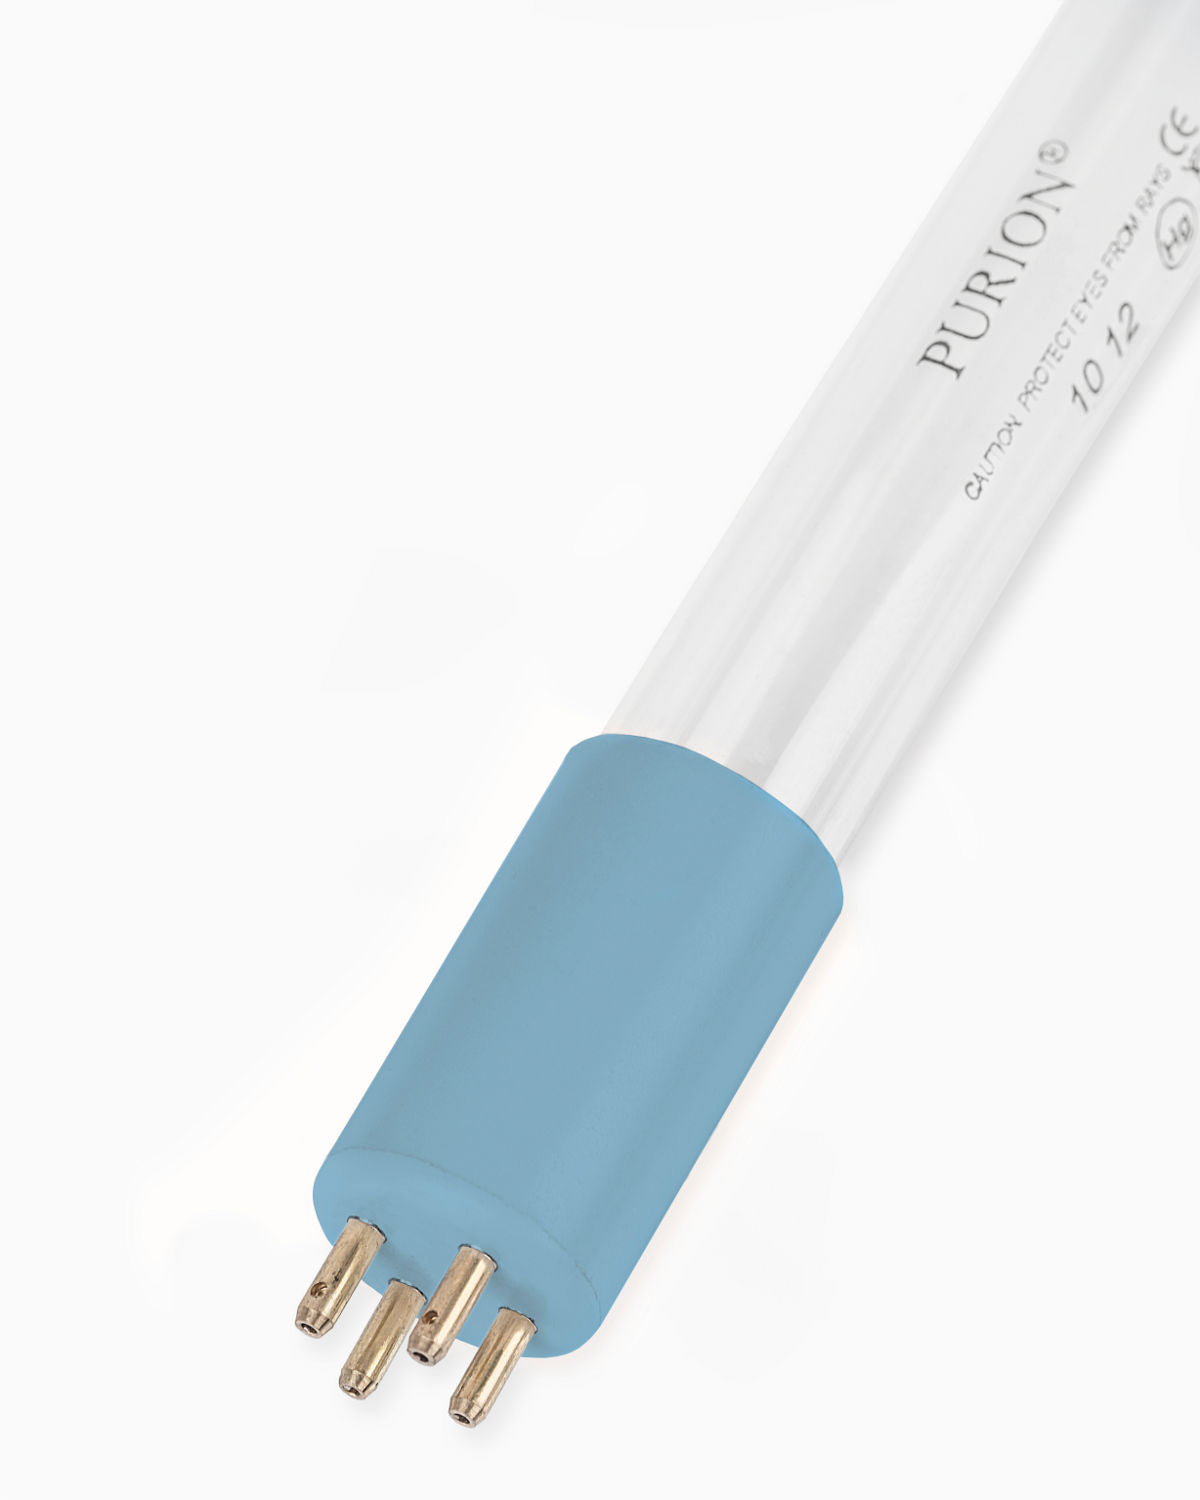 Eine blaue PURION IBC DN150 17W SPL BS OTC 12 V/24 V Lichtröhre auf weißem Hintergrund, eingesetzt in Durchflussanlagen zur Vermeidung von Verkeimungen (Kontamination) von der UV Concept GmbH.